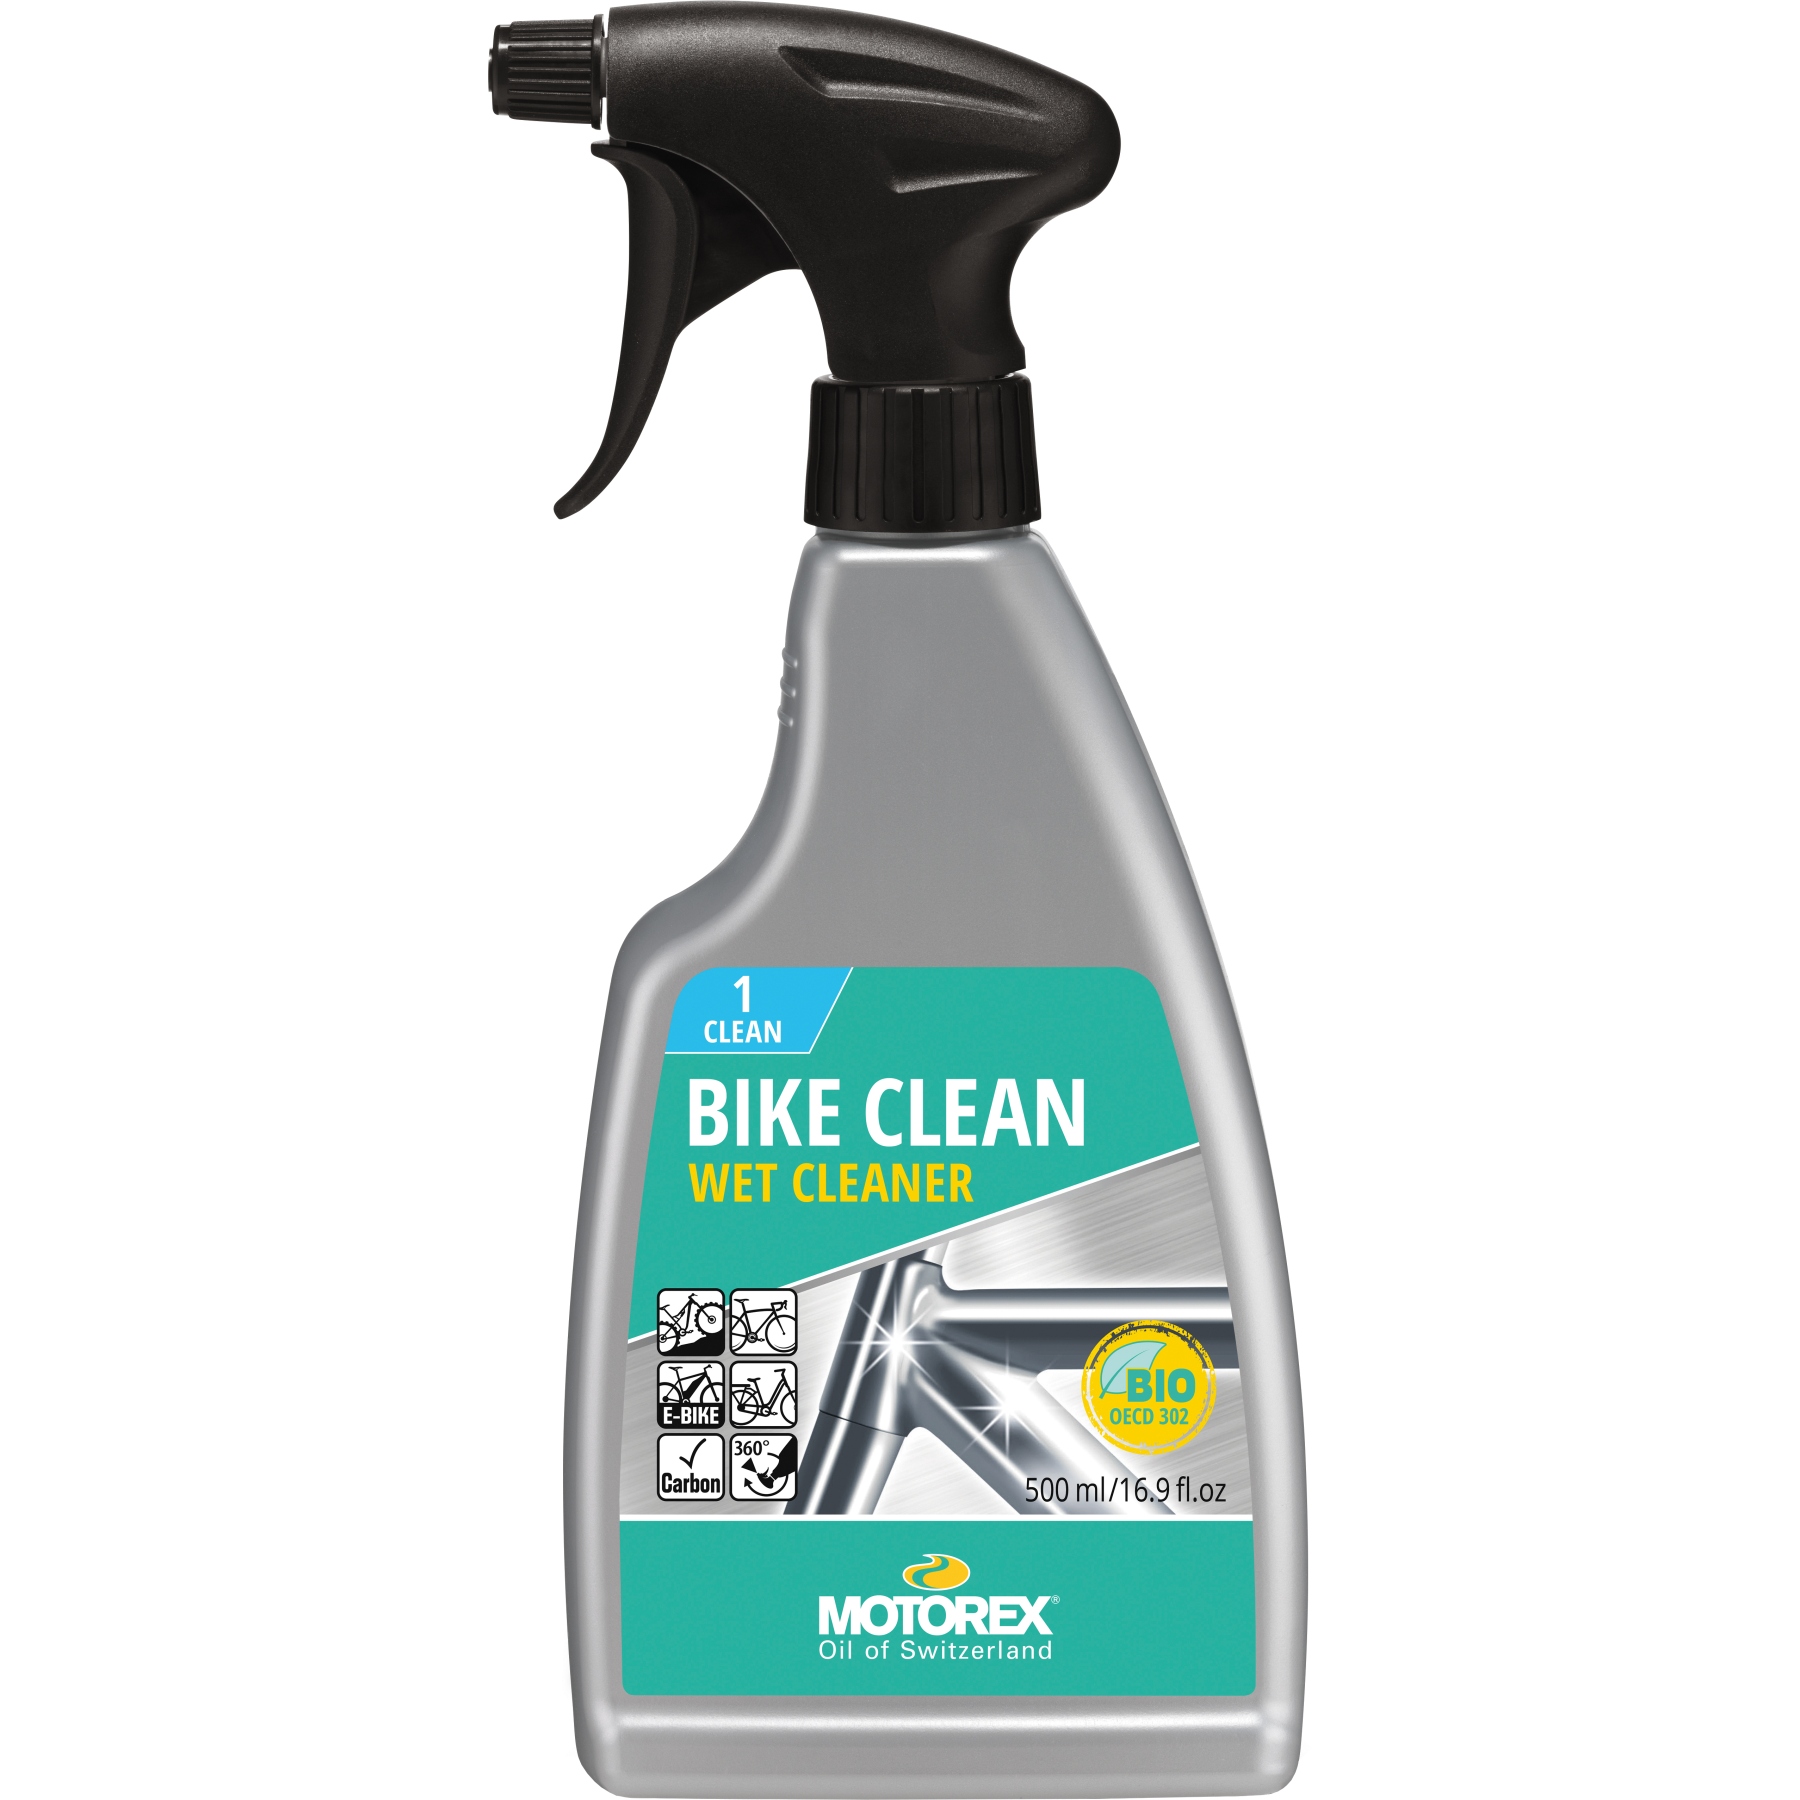 Productfoto van Motorex Bike Clean 500ml